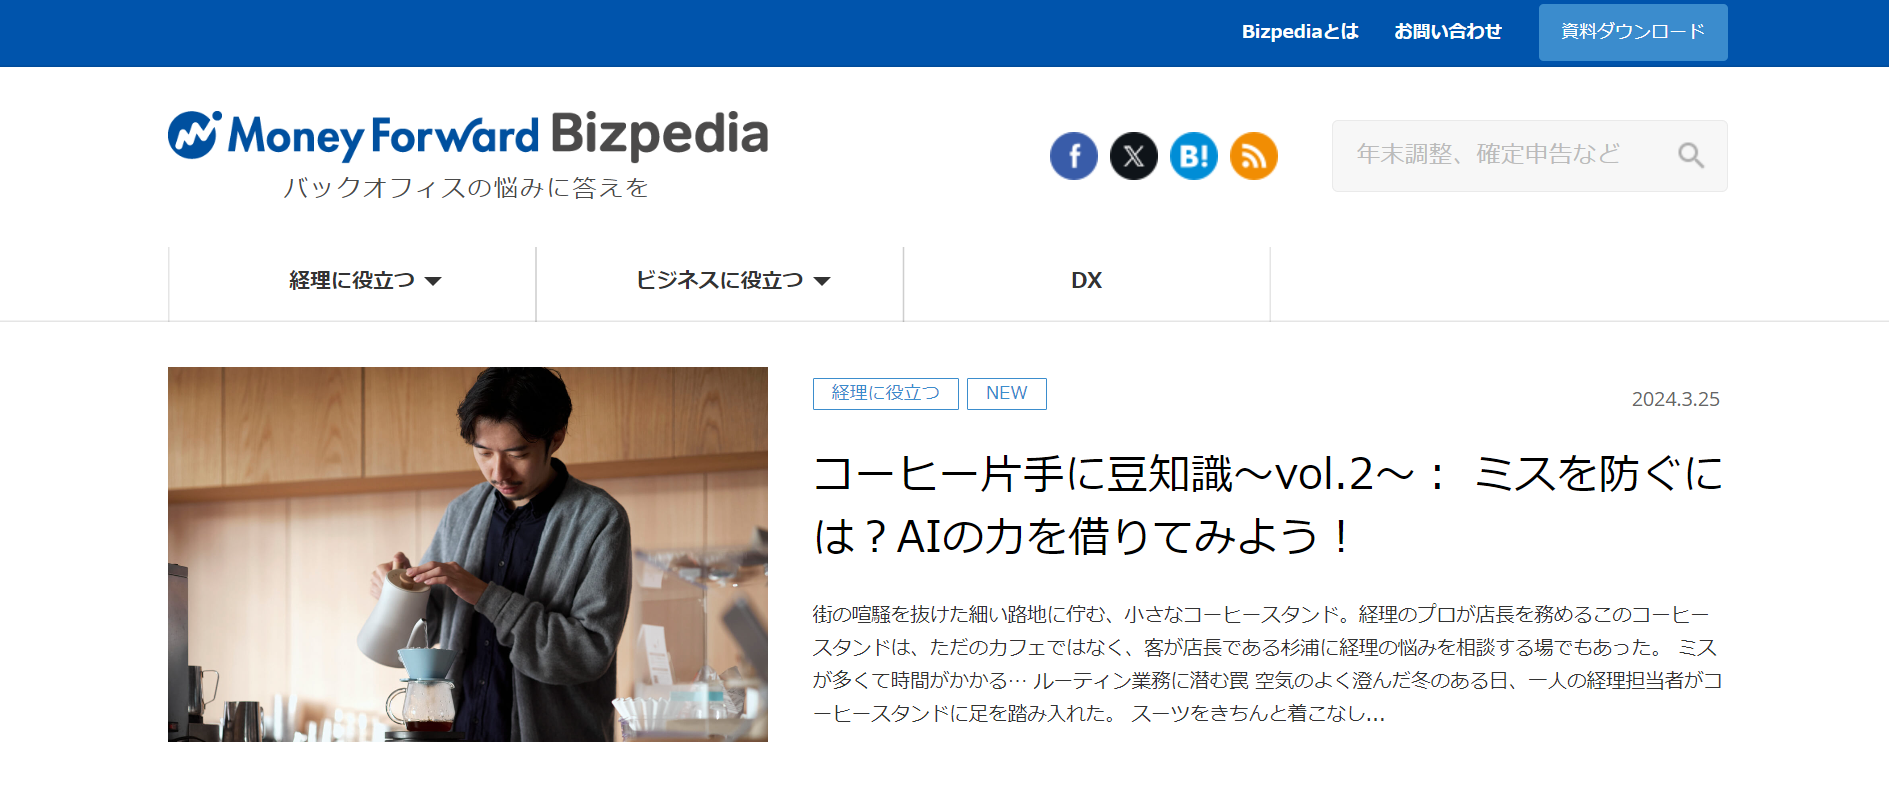 成功事例6．Money Forward Bizpedia（株式会社マネーフォワード）